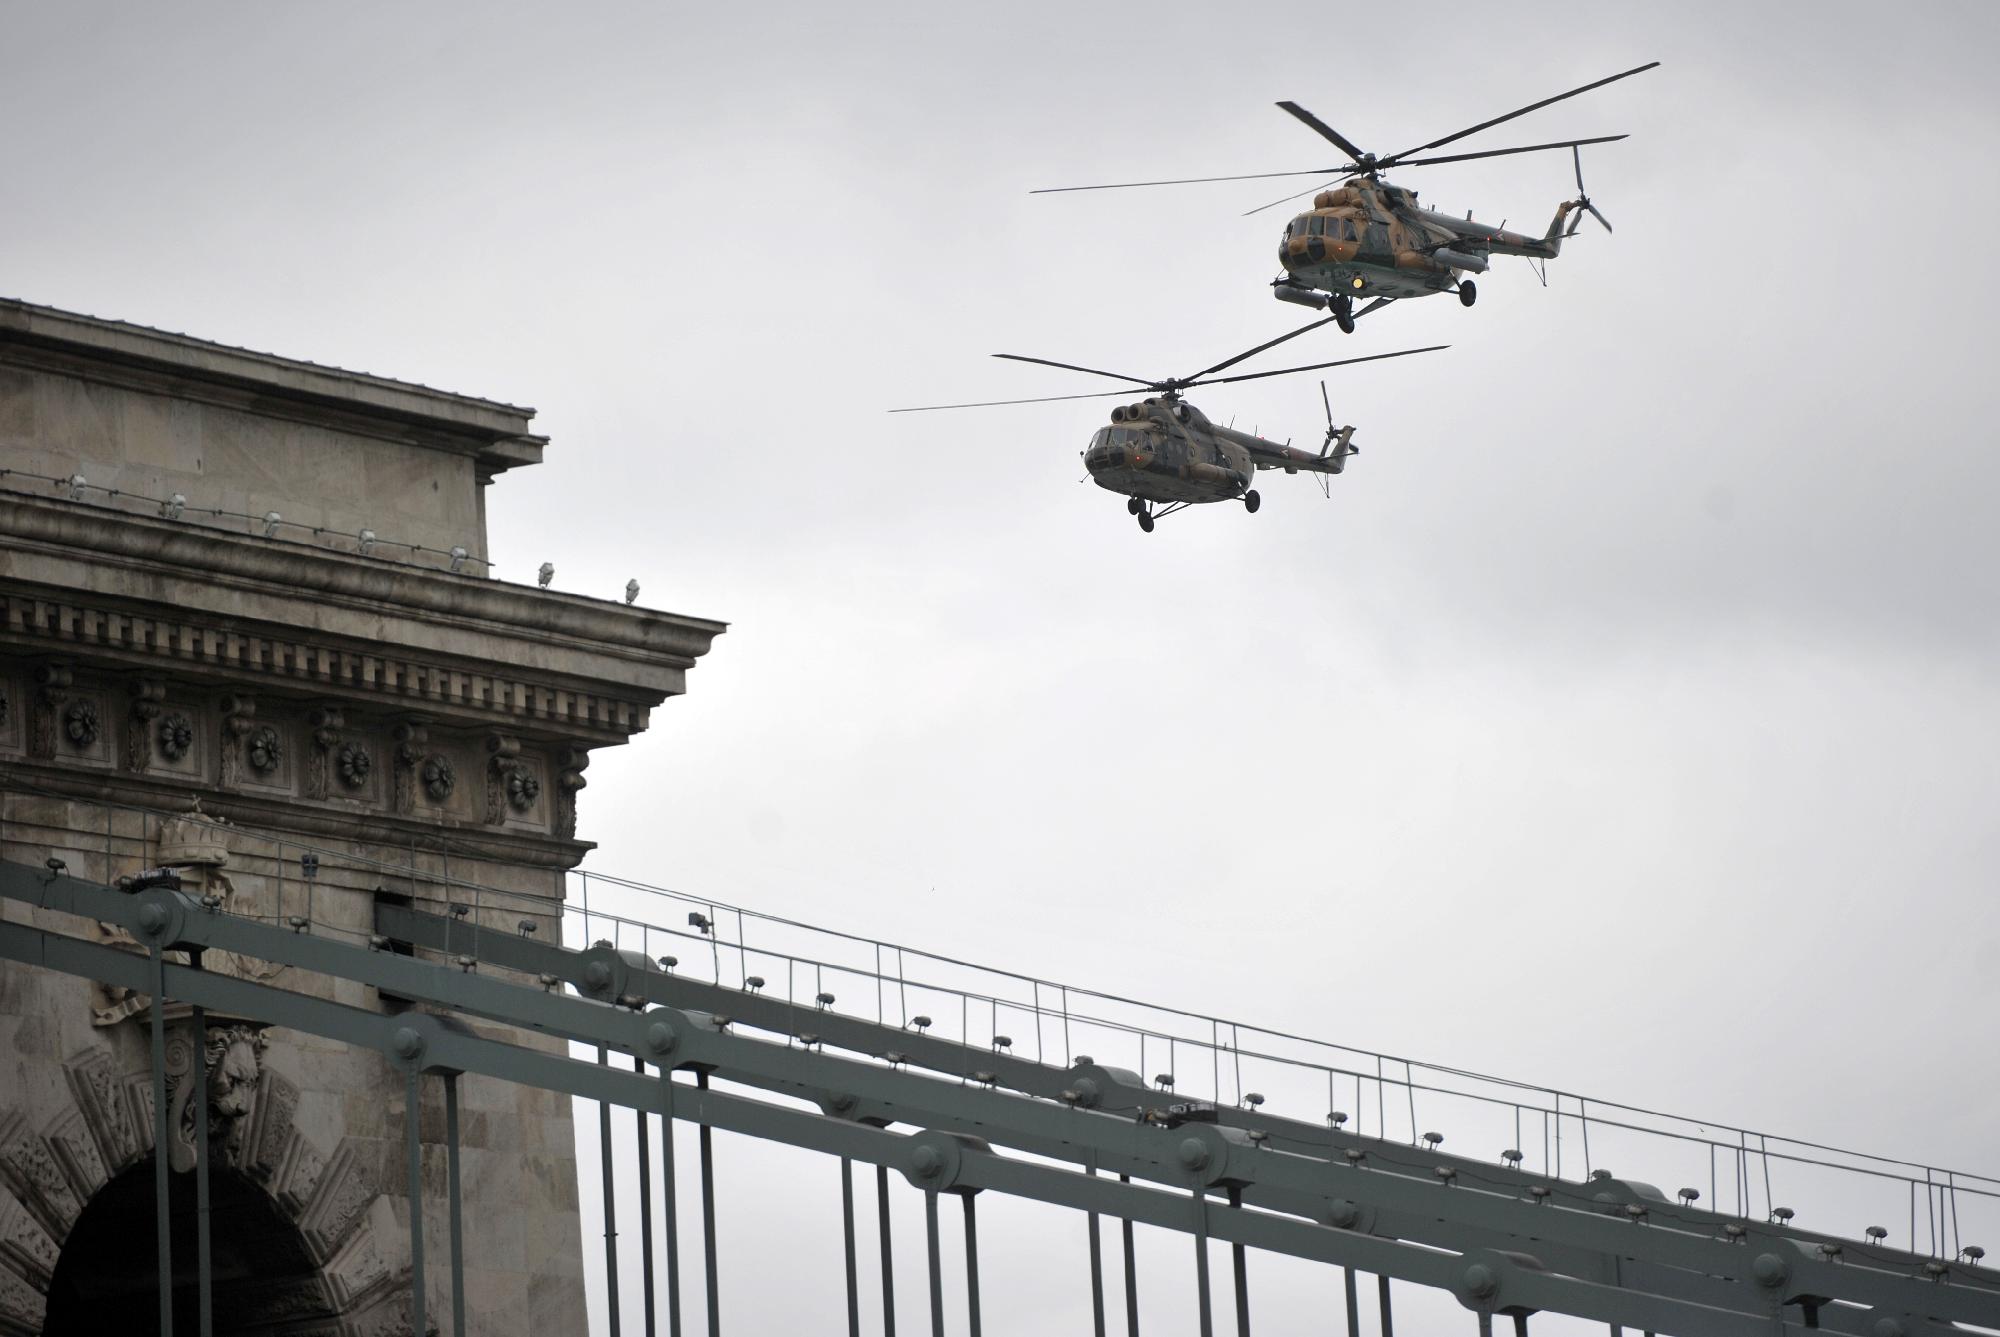 A légi parádé előkészületei miatt kedden nagyobb lehet a zaj Budapest fölött